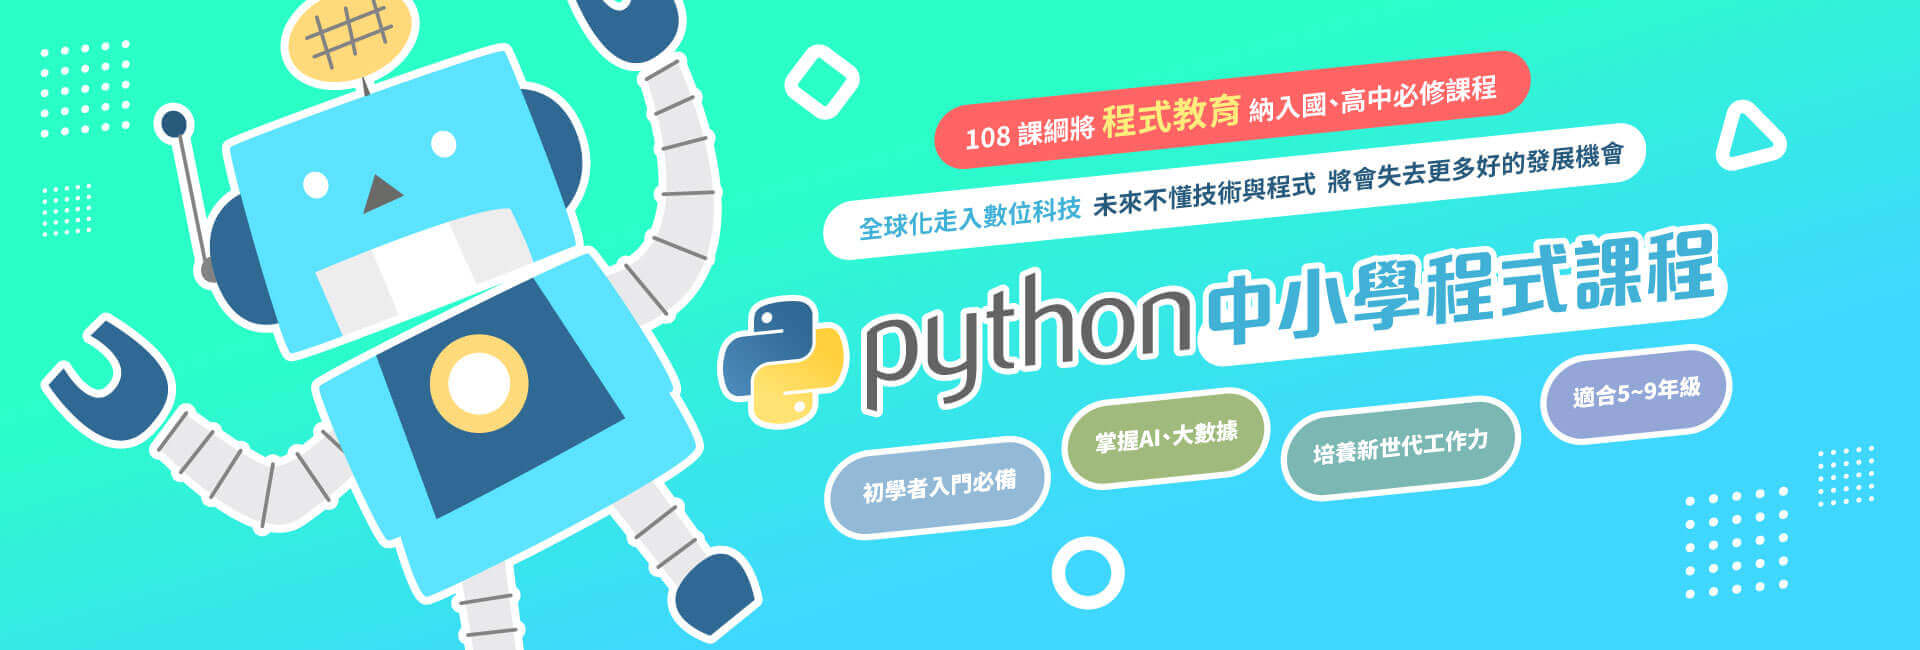 iWorldJR-Python 中小學程式課程